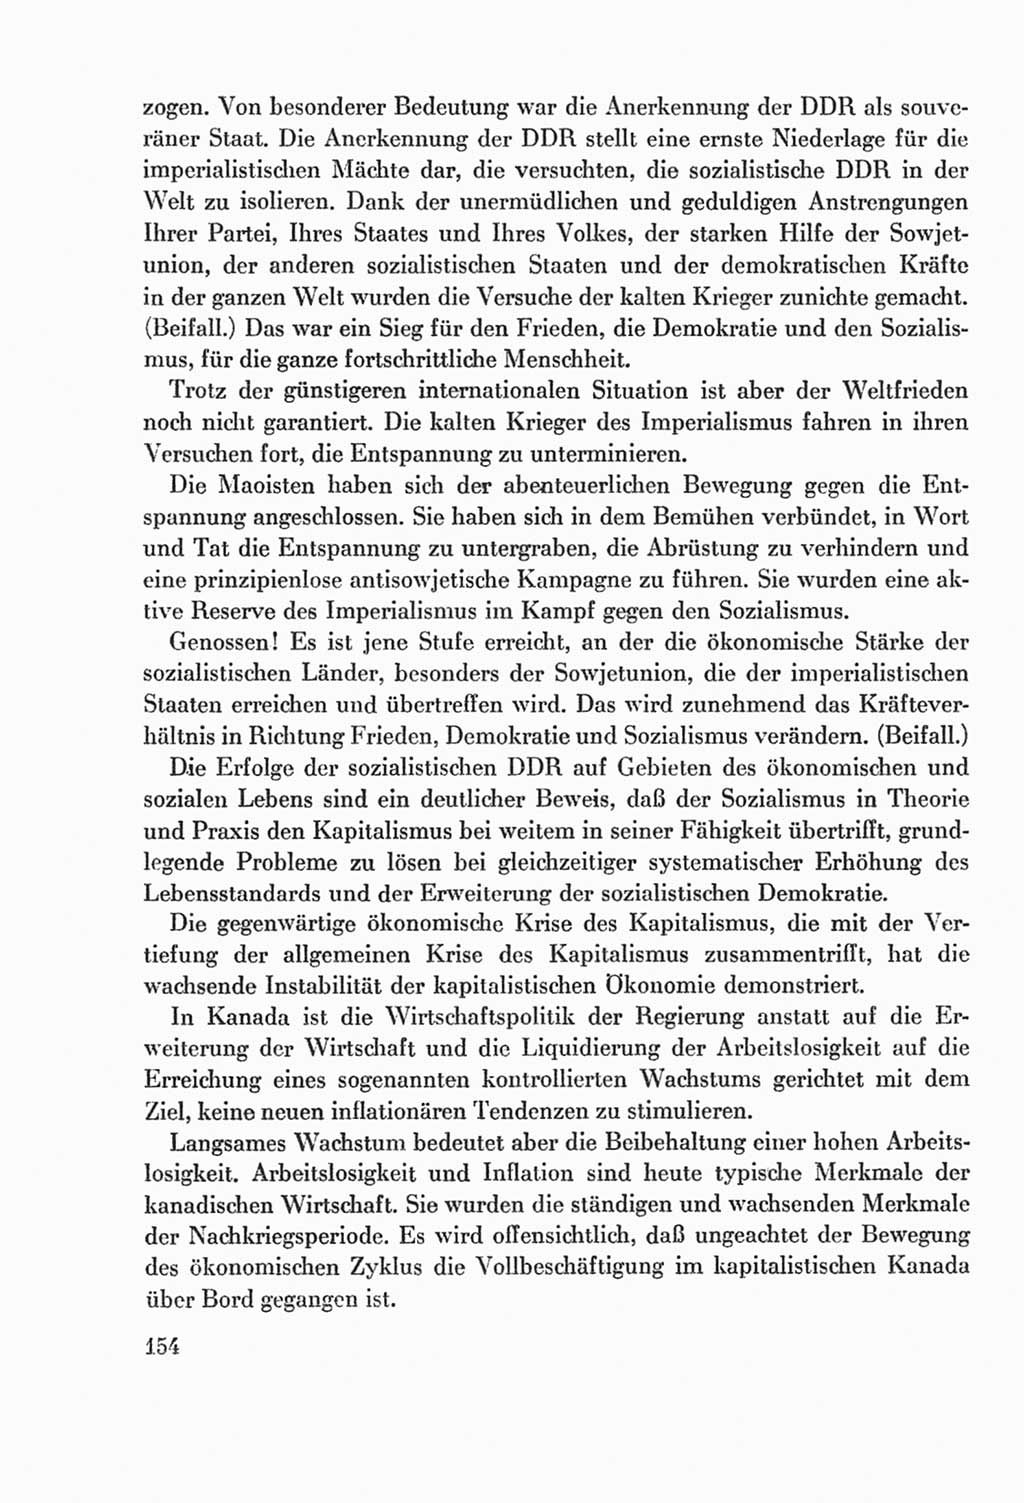 Protokoll der Verhandlungen des Ⅸ. Parteitages der Sozialistischen Einheitspartei Deutschlands (SED) [Deutsche Demokratische Republik (DDR)] 1976, Band 2, Seite 154 (Prot. Verh. Ⅸ. PT SED DDR 1976, Bd. 2, S. 154)